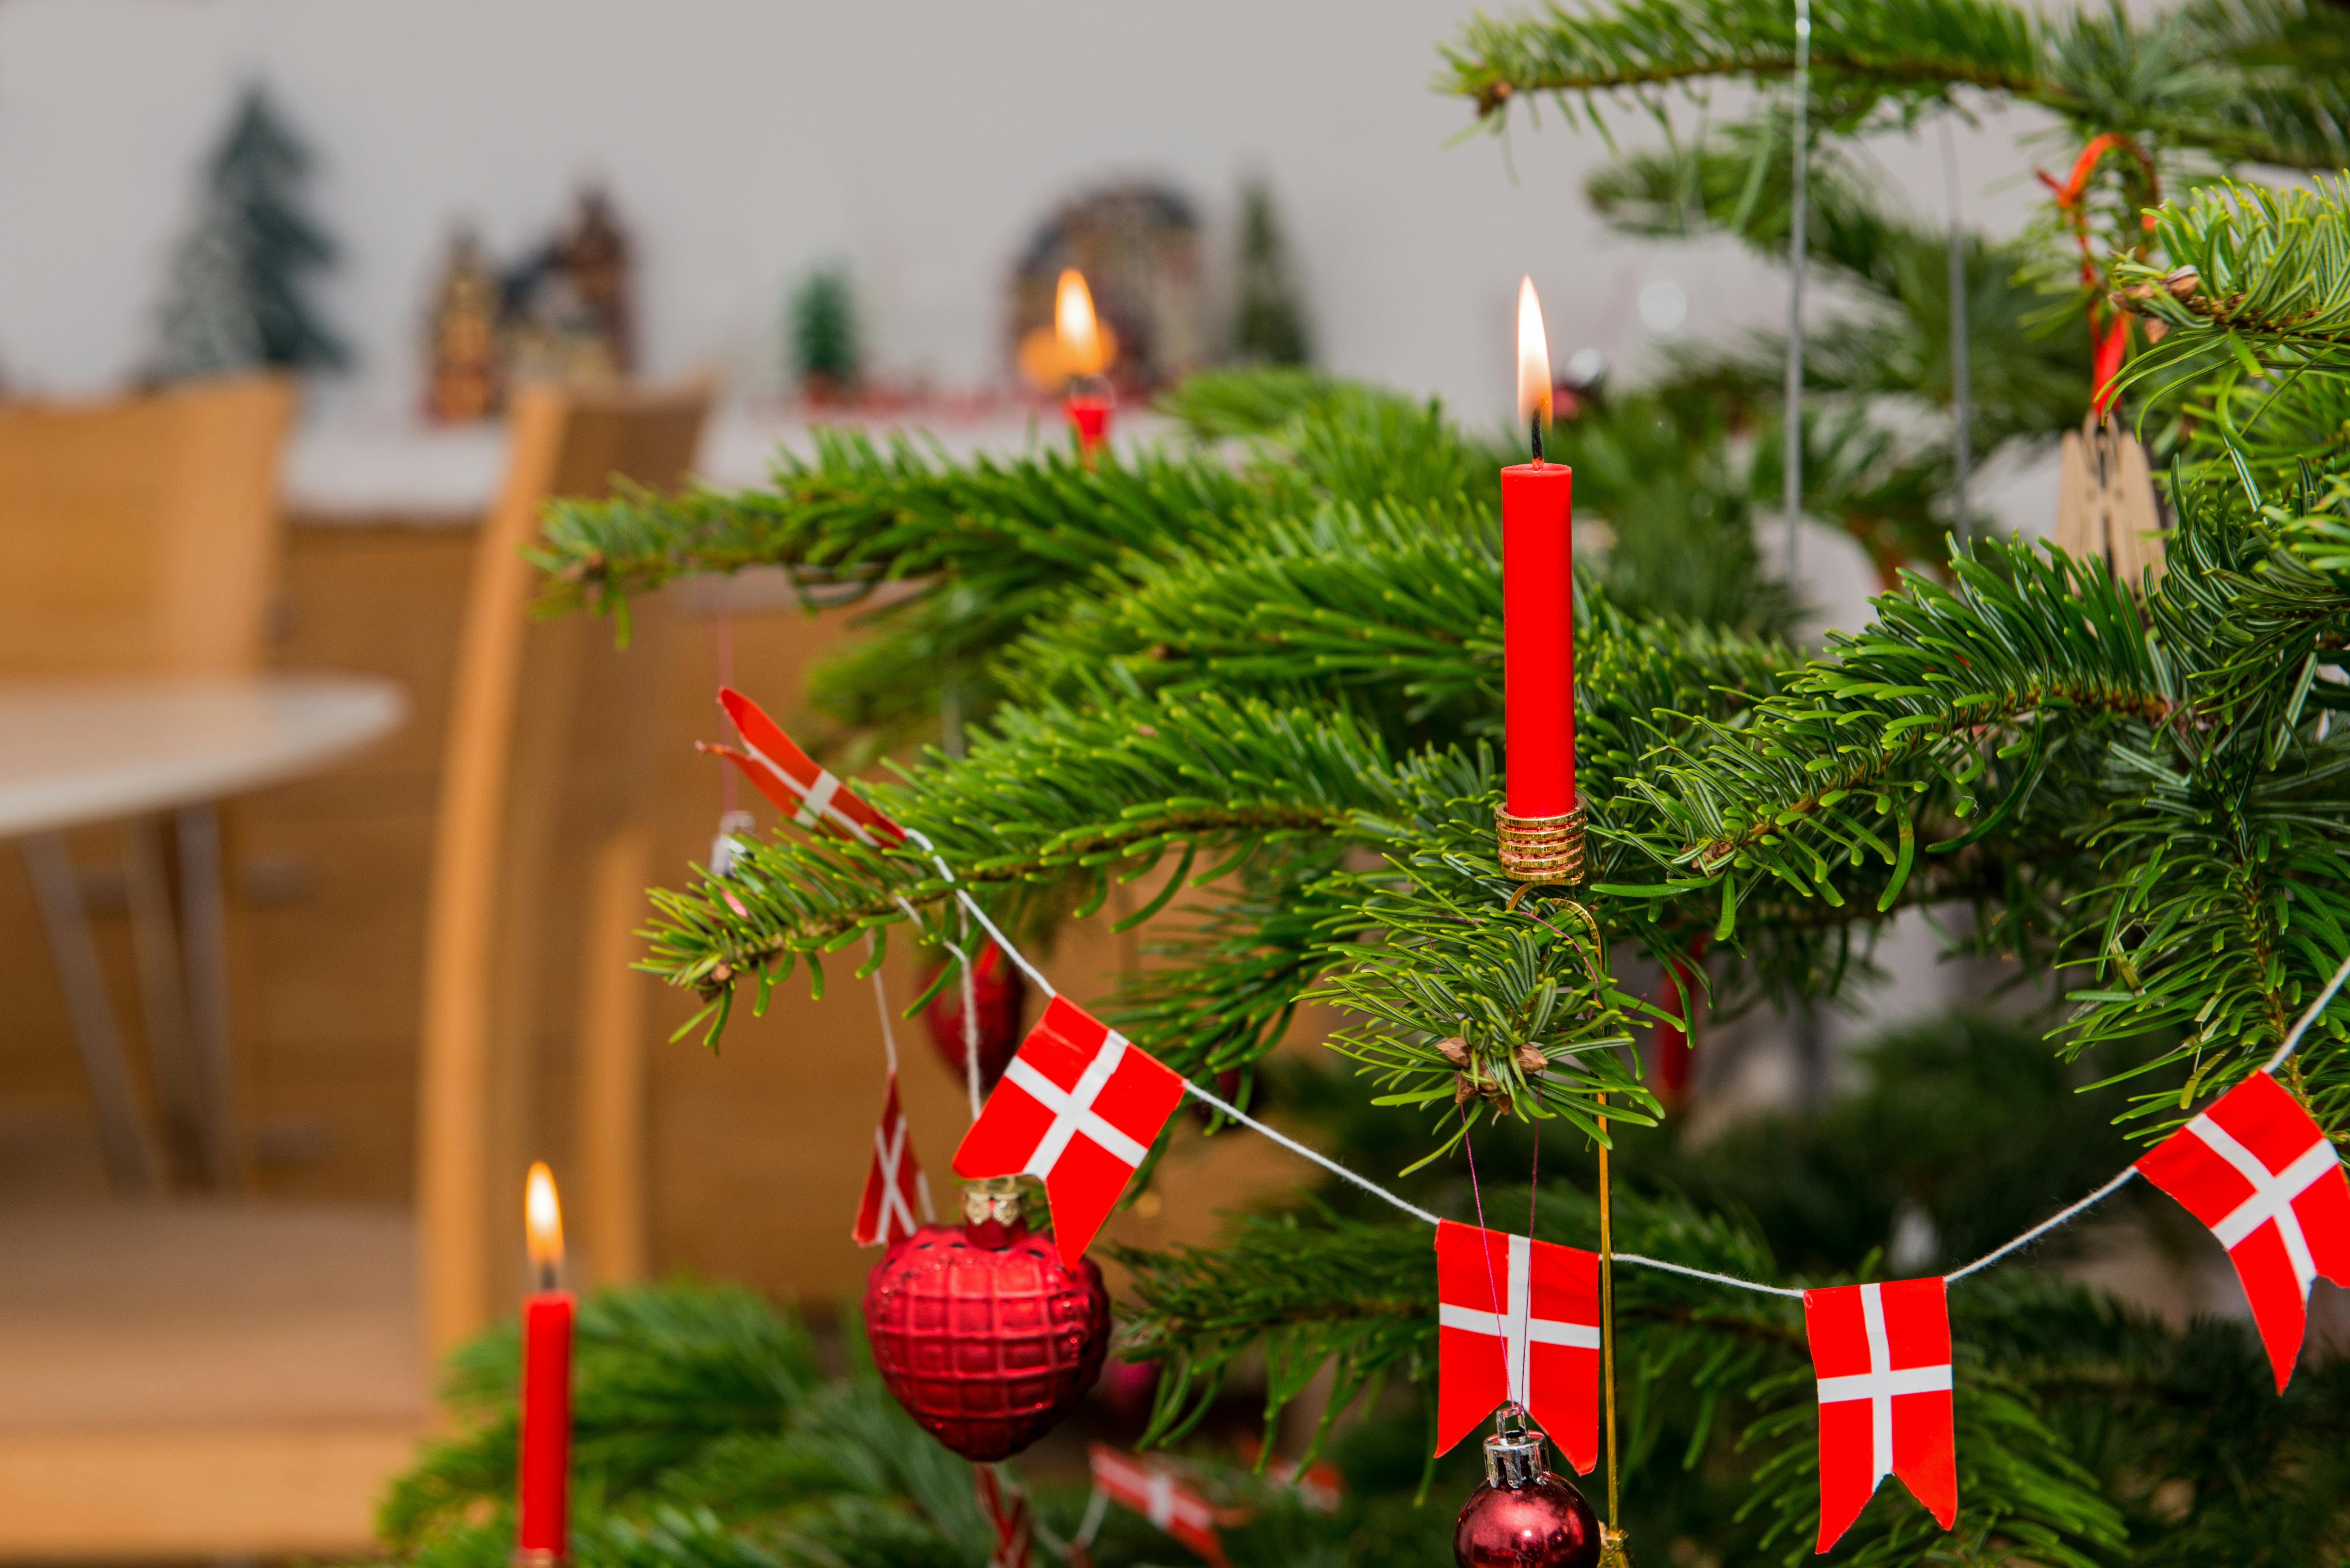 Juletræ med røde lys og danske flag.